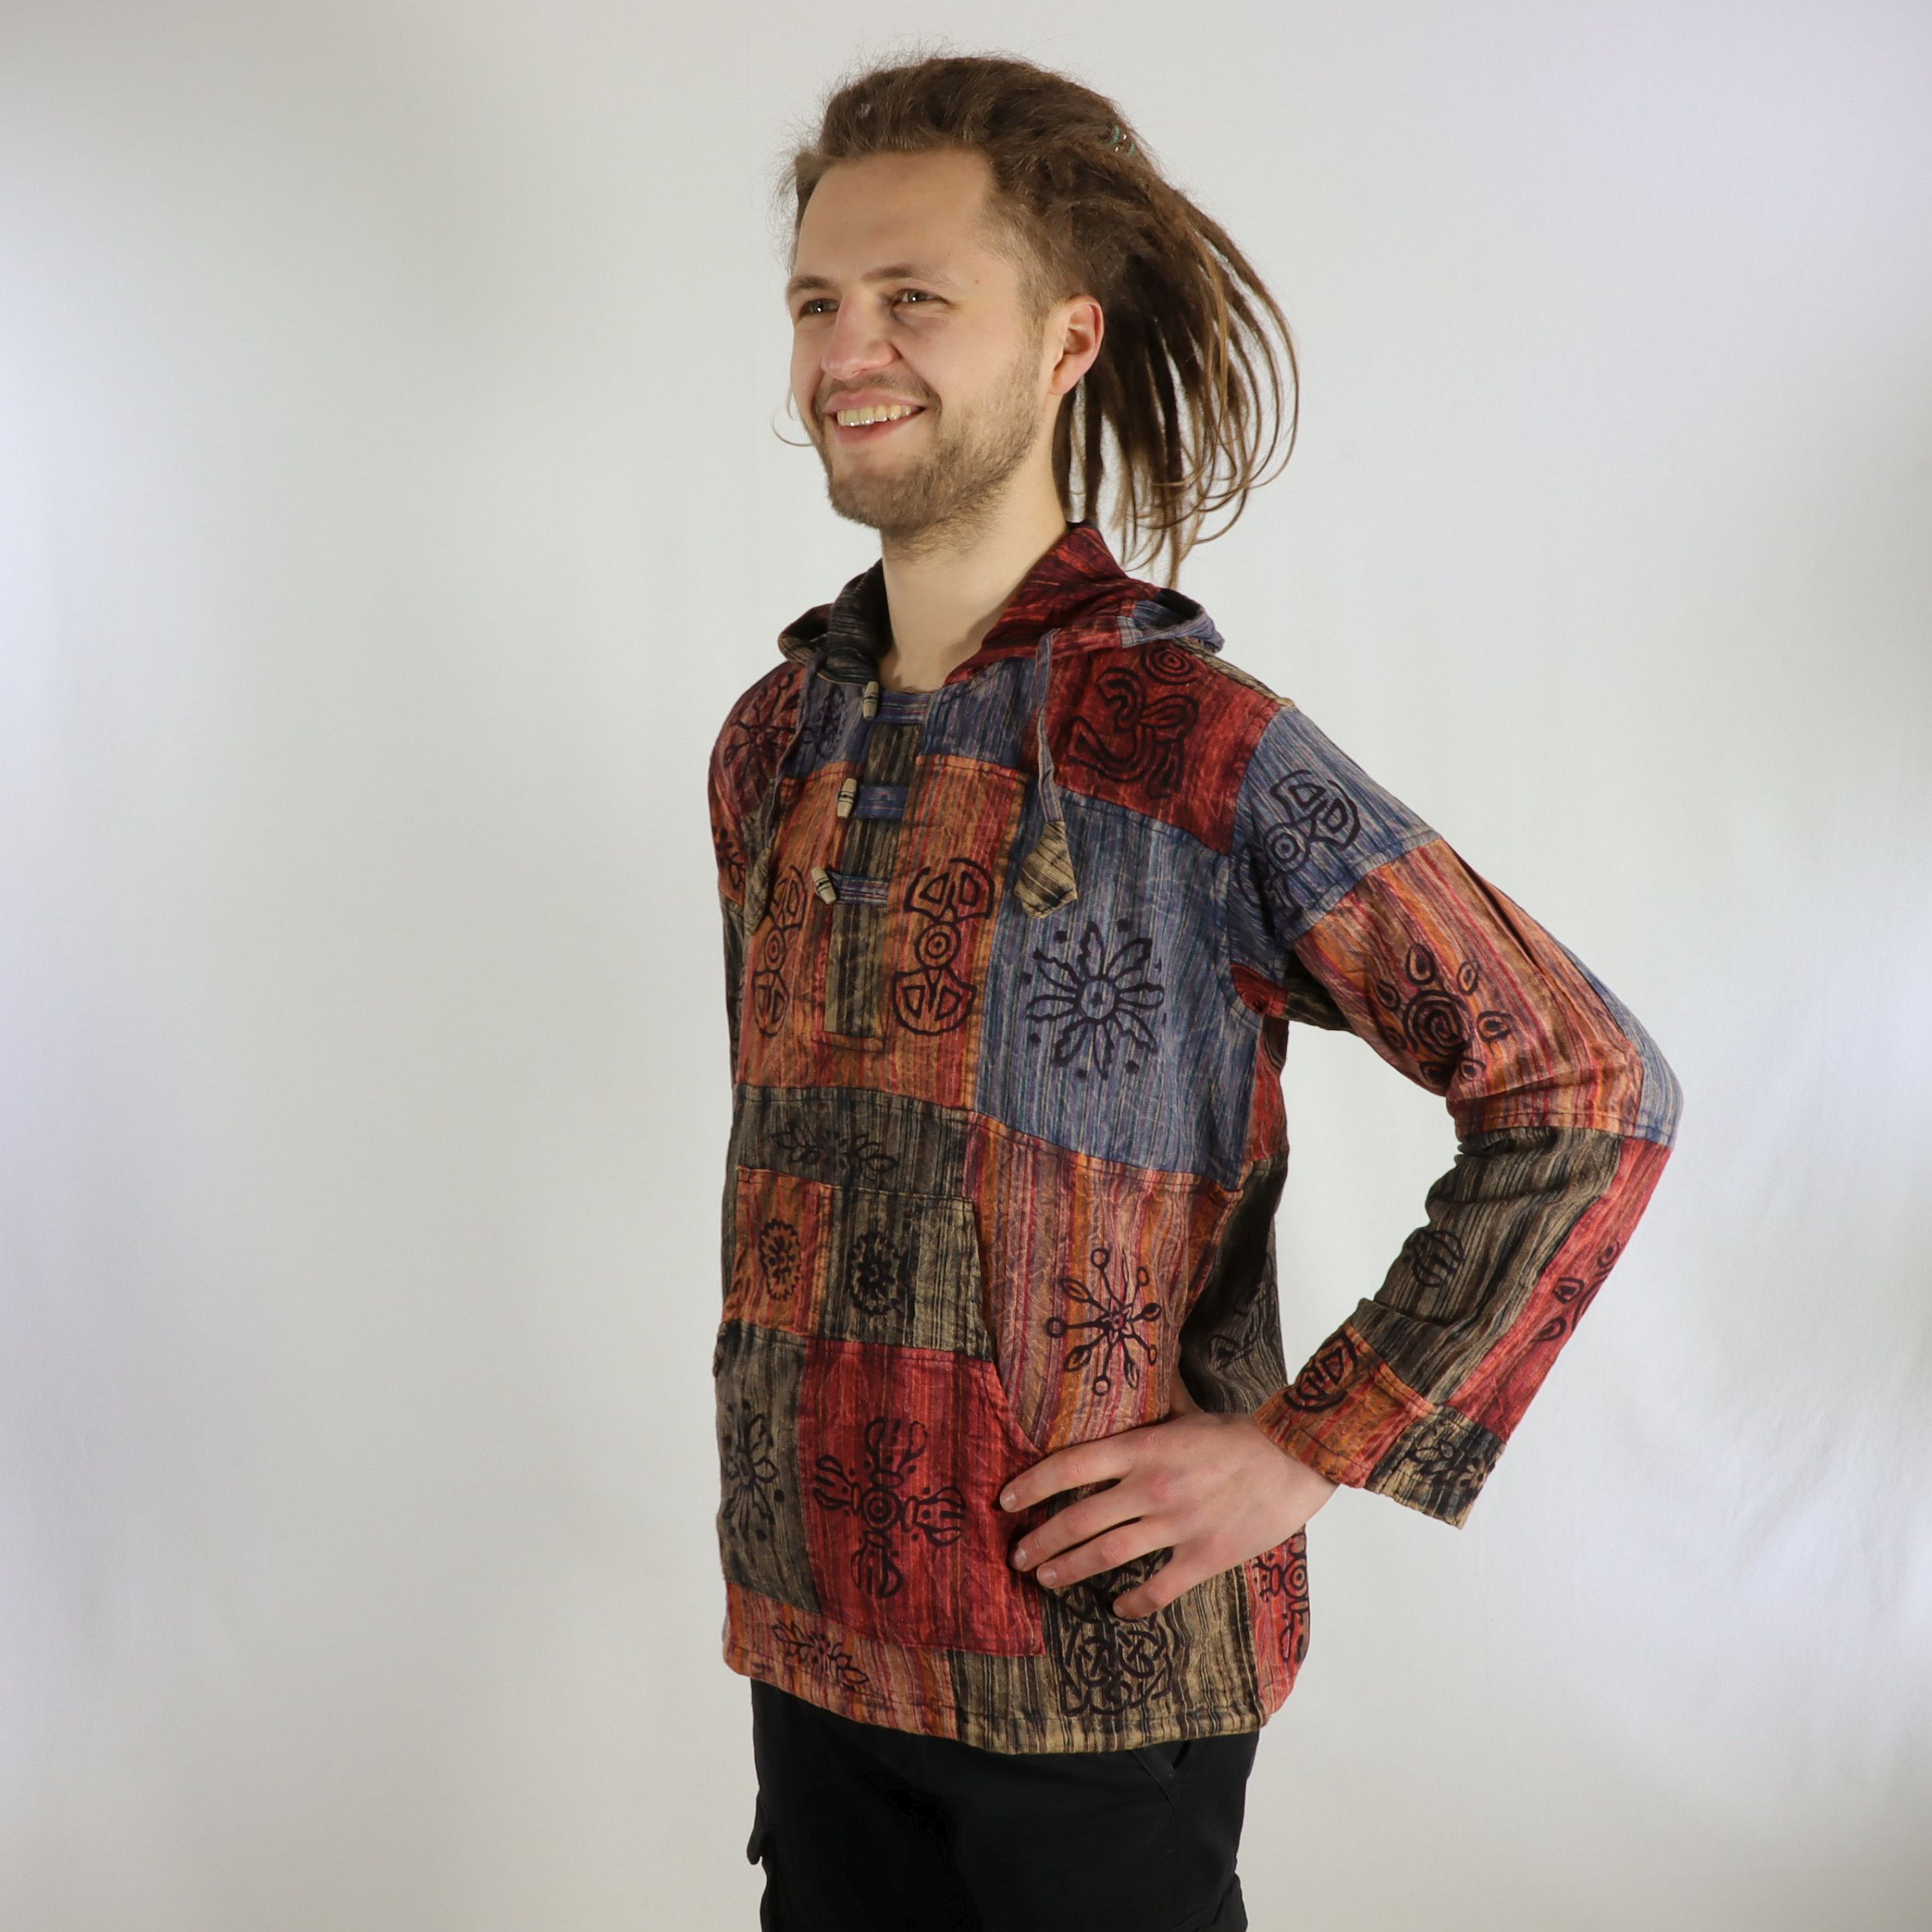 Kangaroo-Hemd - Patchwork Design - 100% Baumwolle - große Tasche und Kaputze - Dein außergewöhnliches Used Look Hemd - Fair gehandelt aus Nepal